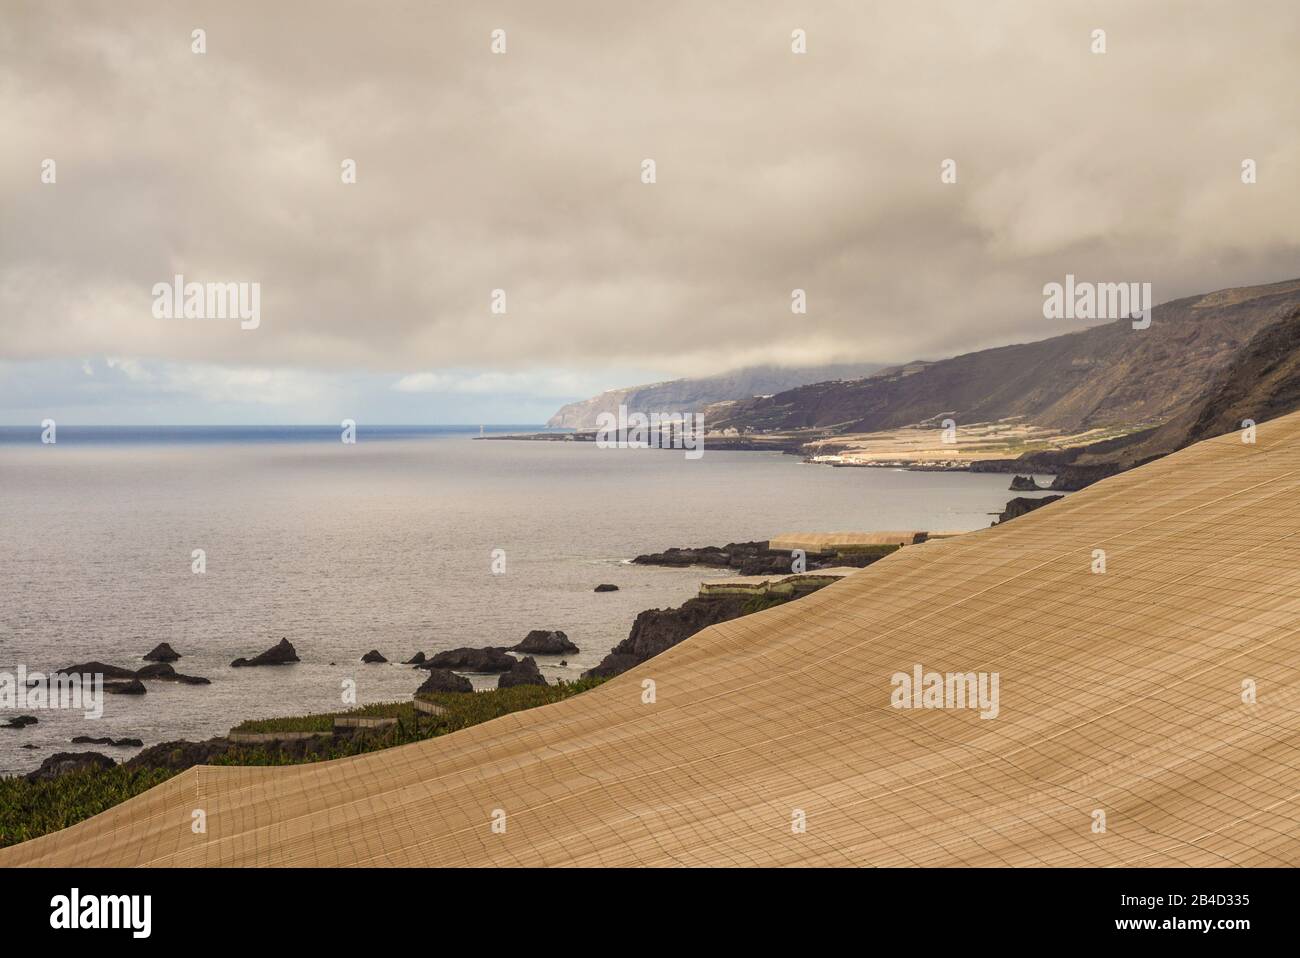 Spain, Canary Islands, La Palma Island, Las Indias, coastal banana plantations Stock Photo